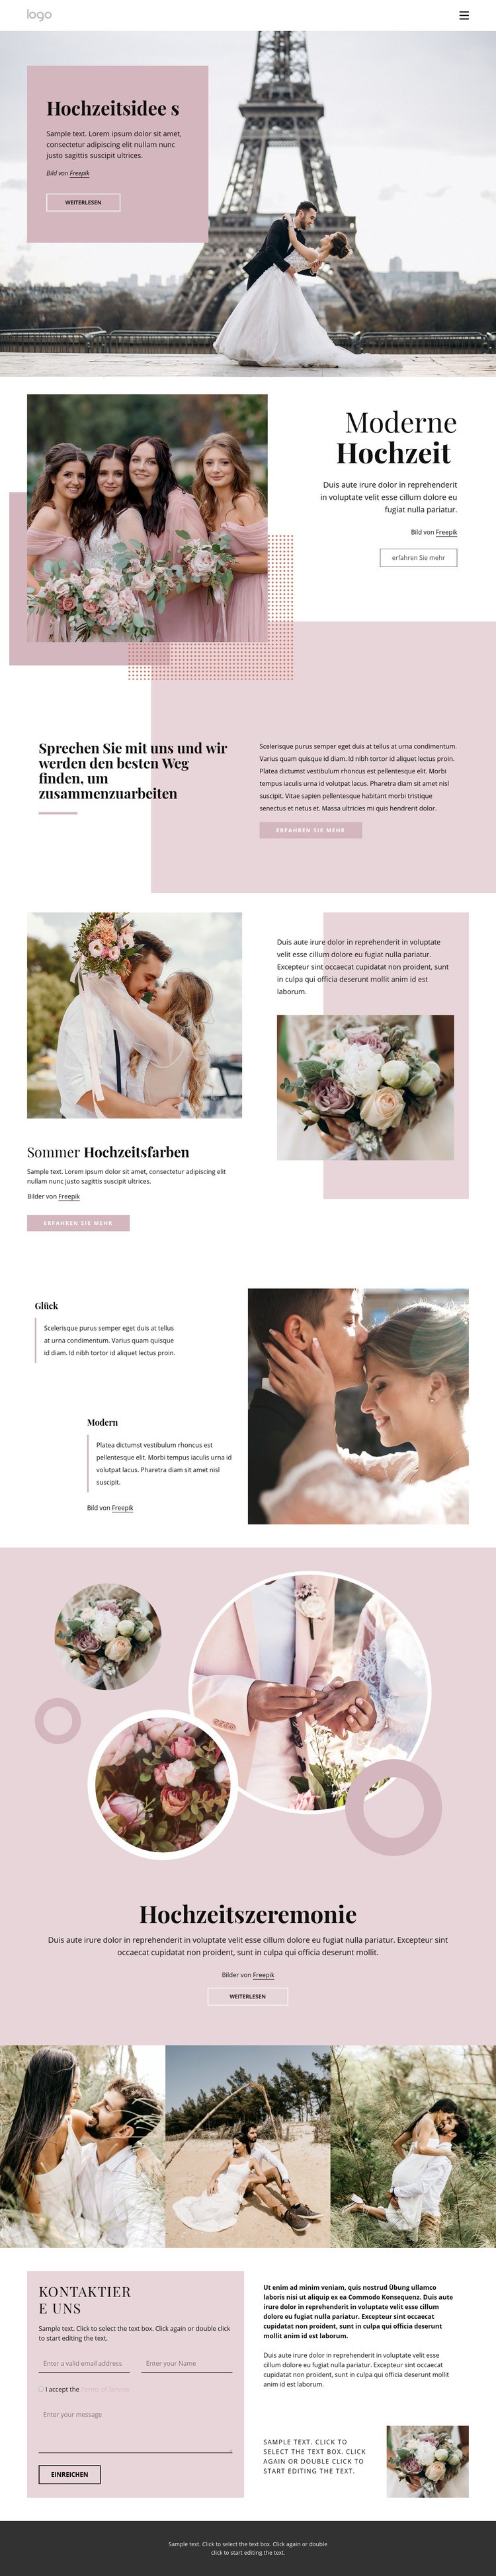 Einzigartige Hochzeitszeremonie Website-Modell